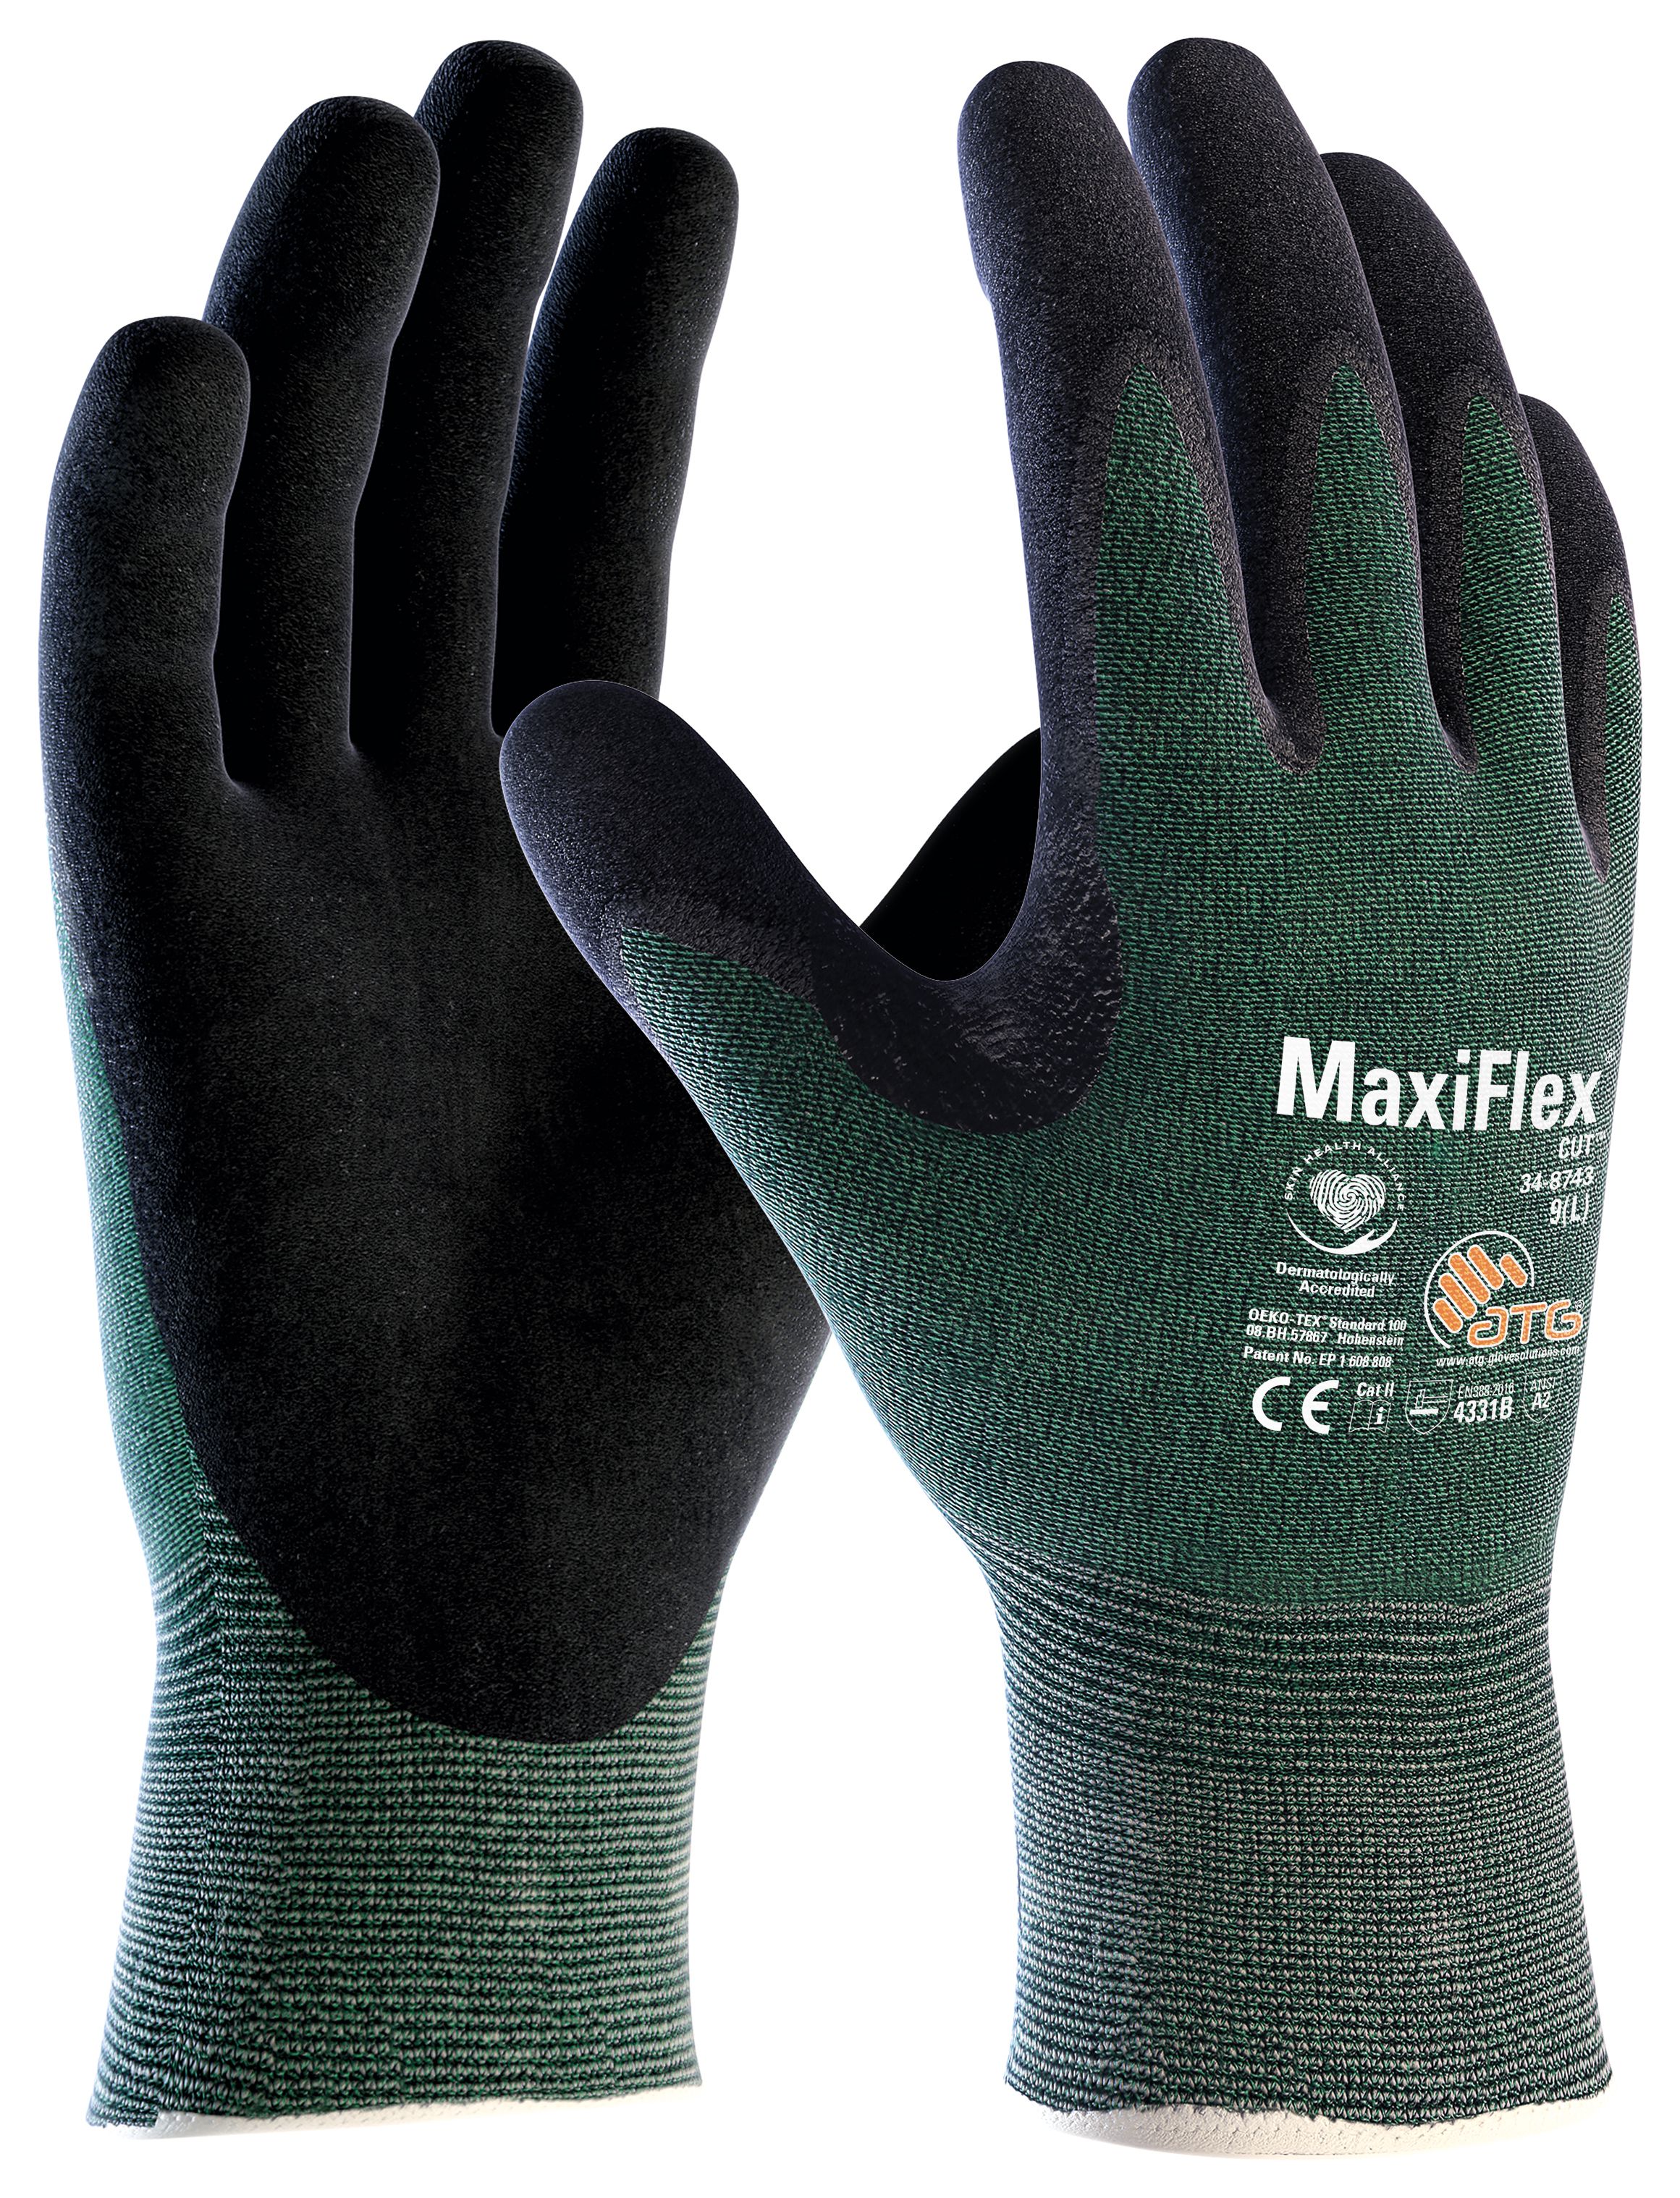 Image of ATG 34-8743 MaxiCut Level Three Work Gloves - Large Size 9